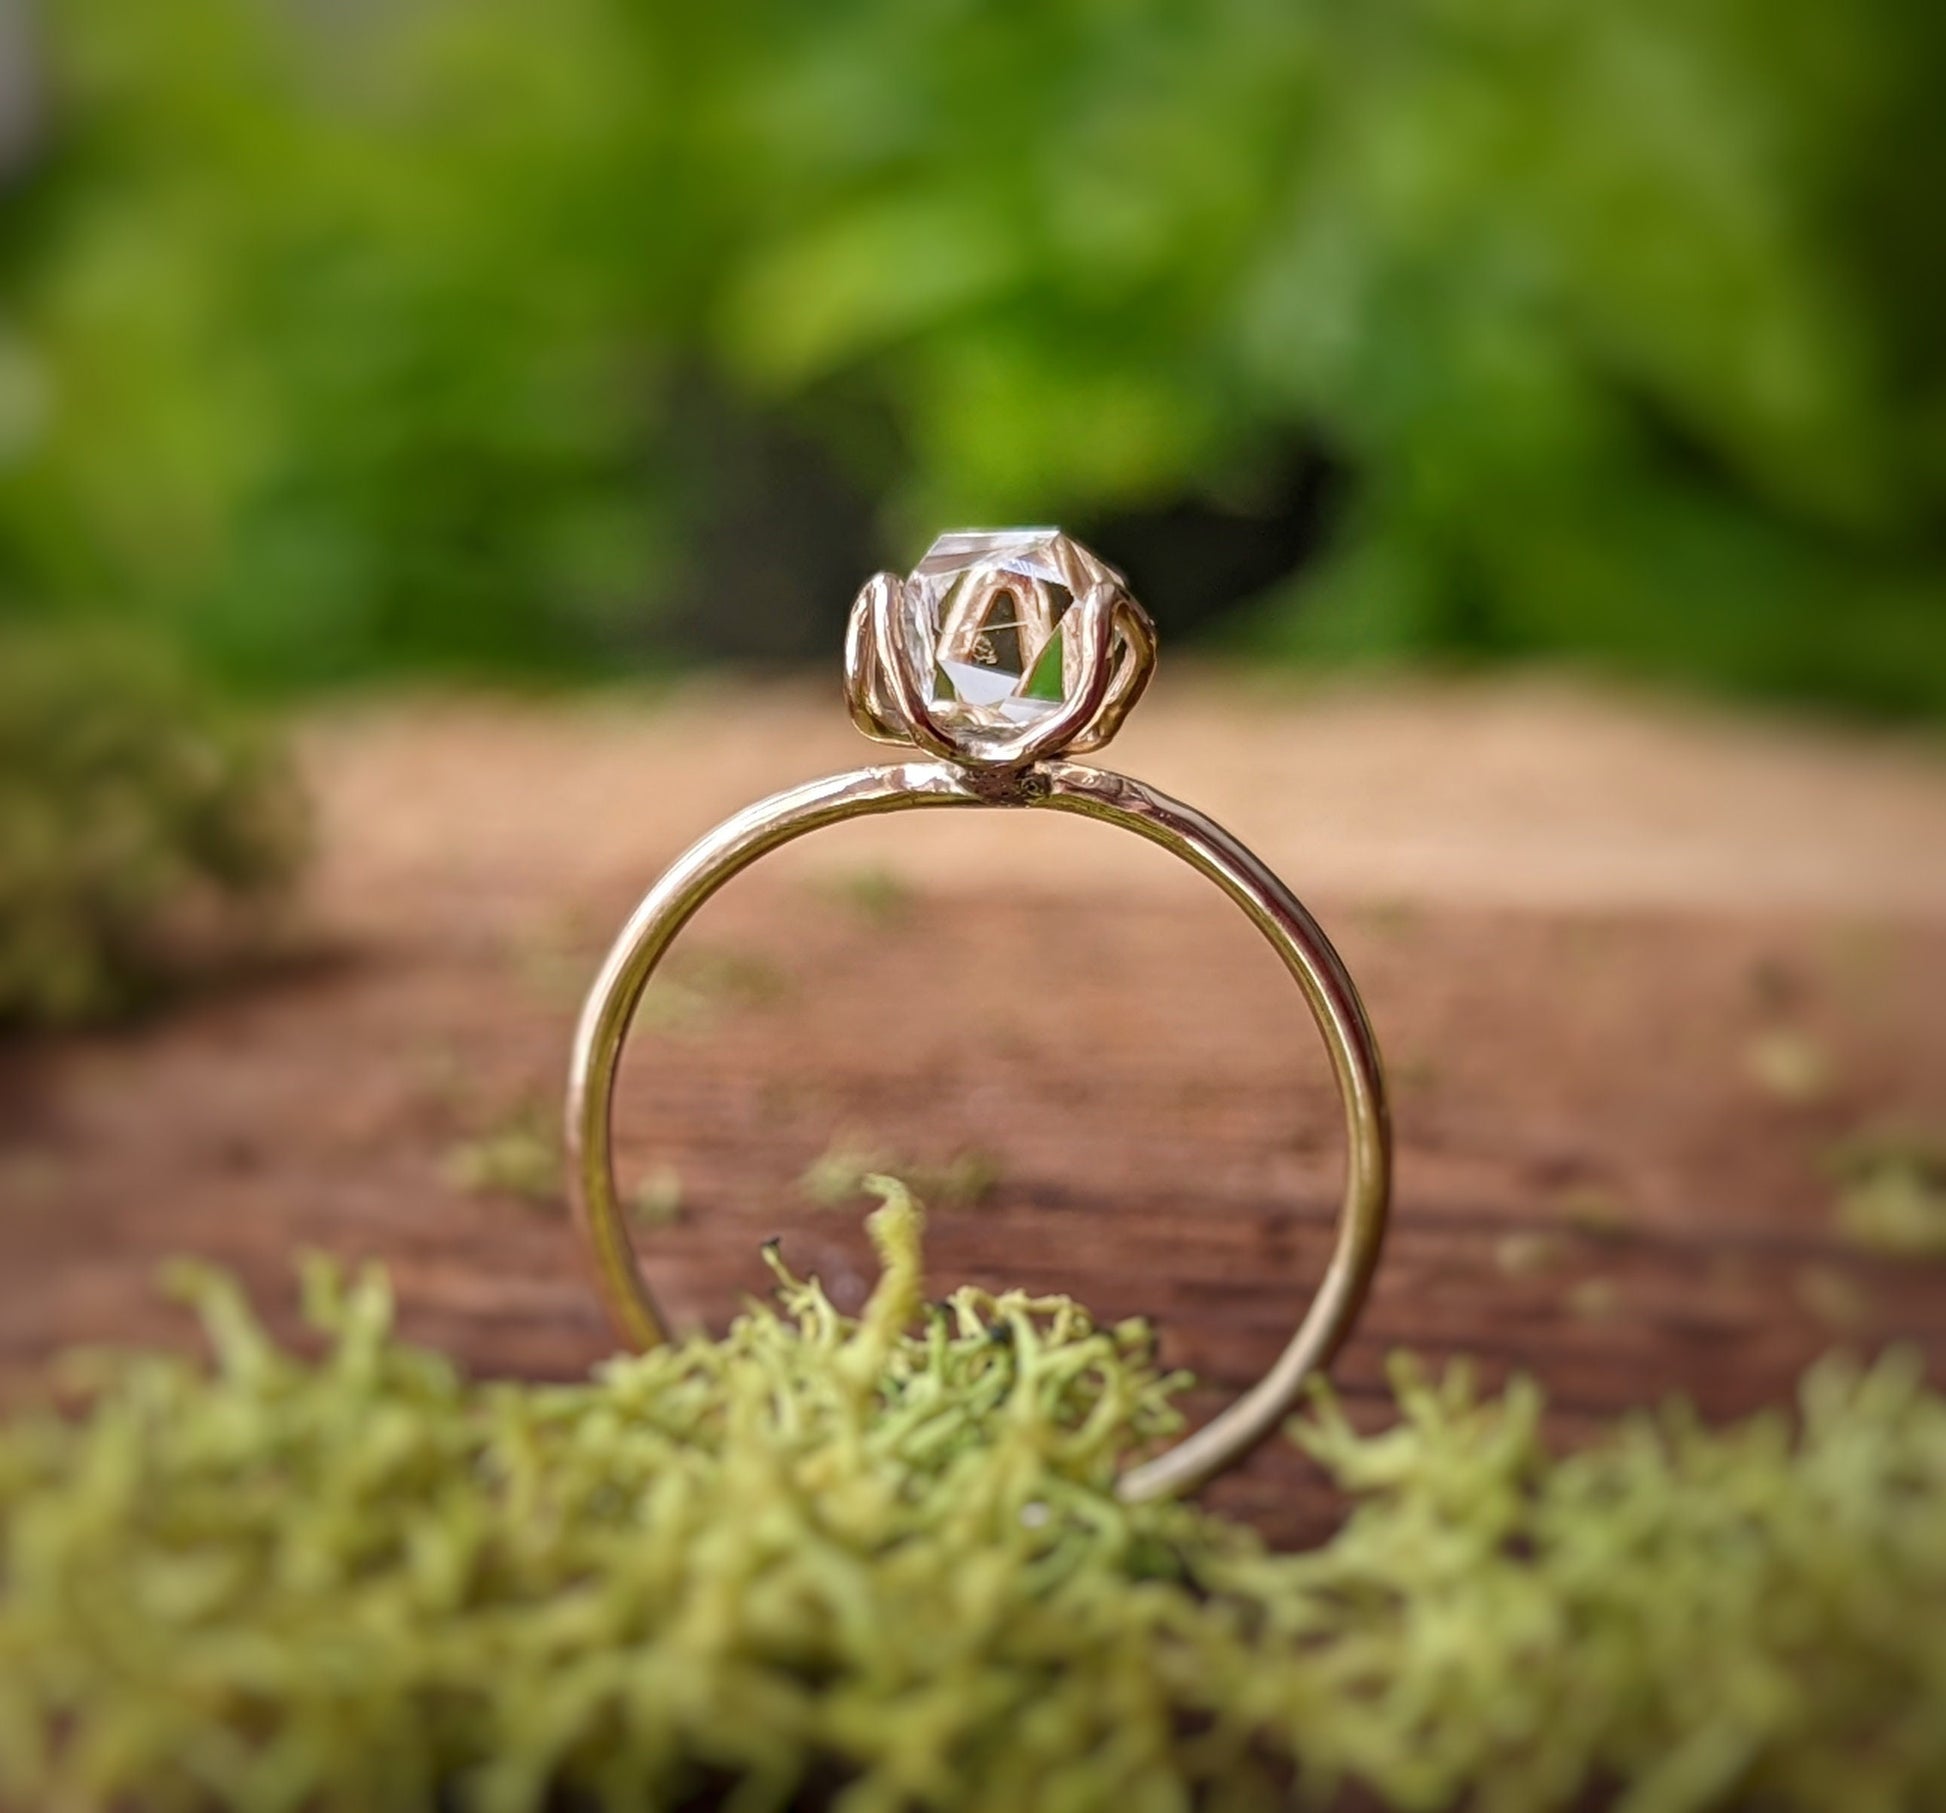 Herkimer diamond Engagement Ring in 18k Gold Flower prongs